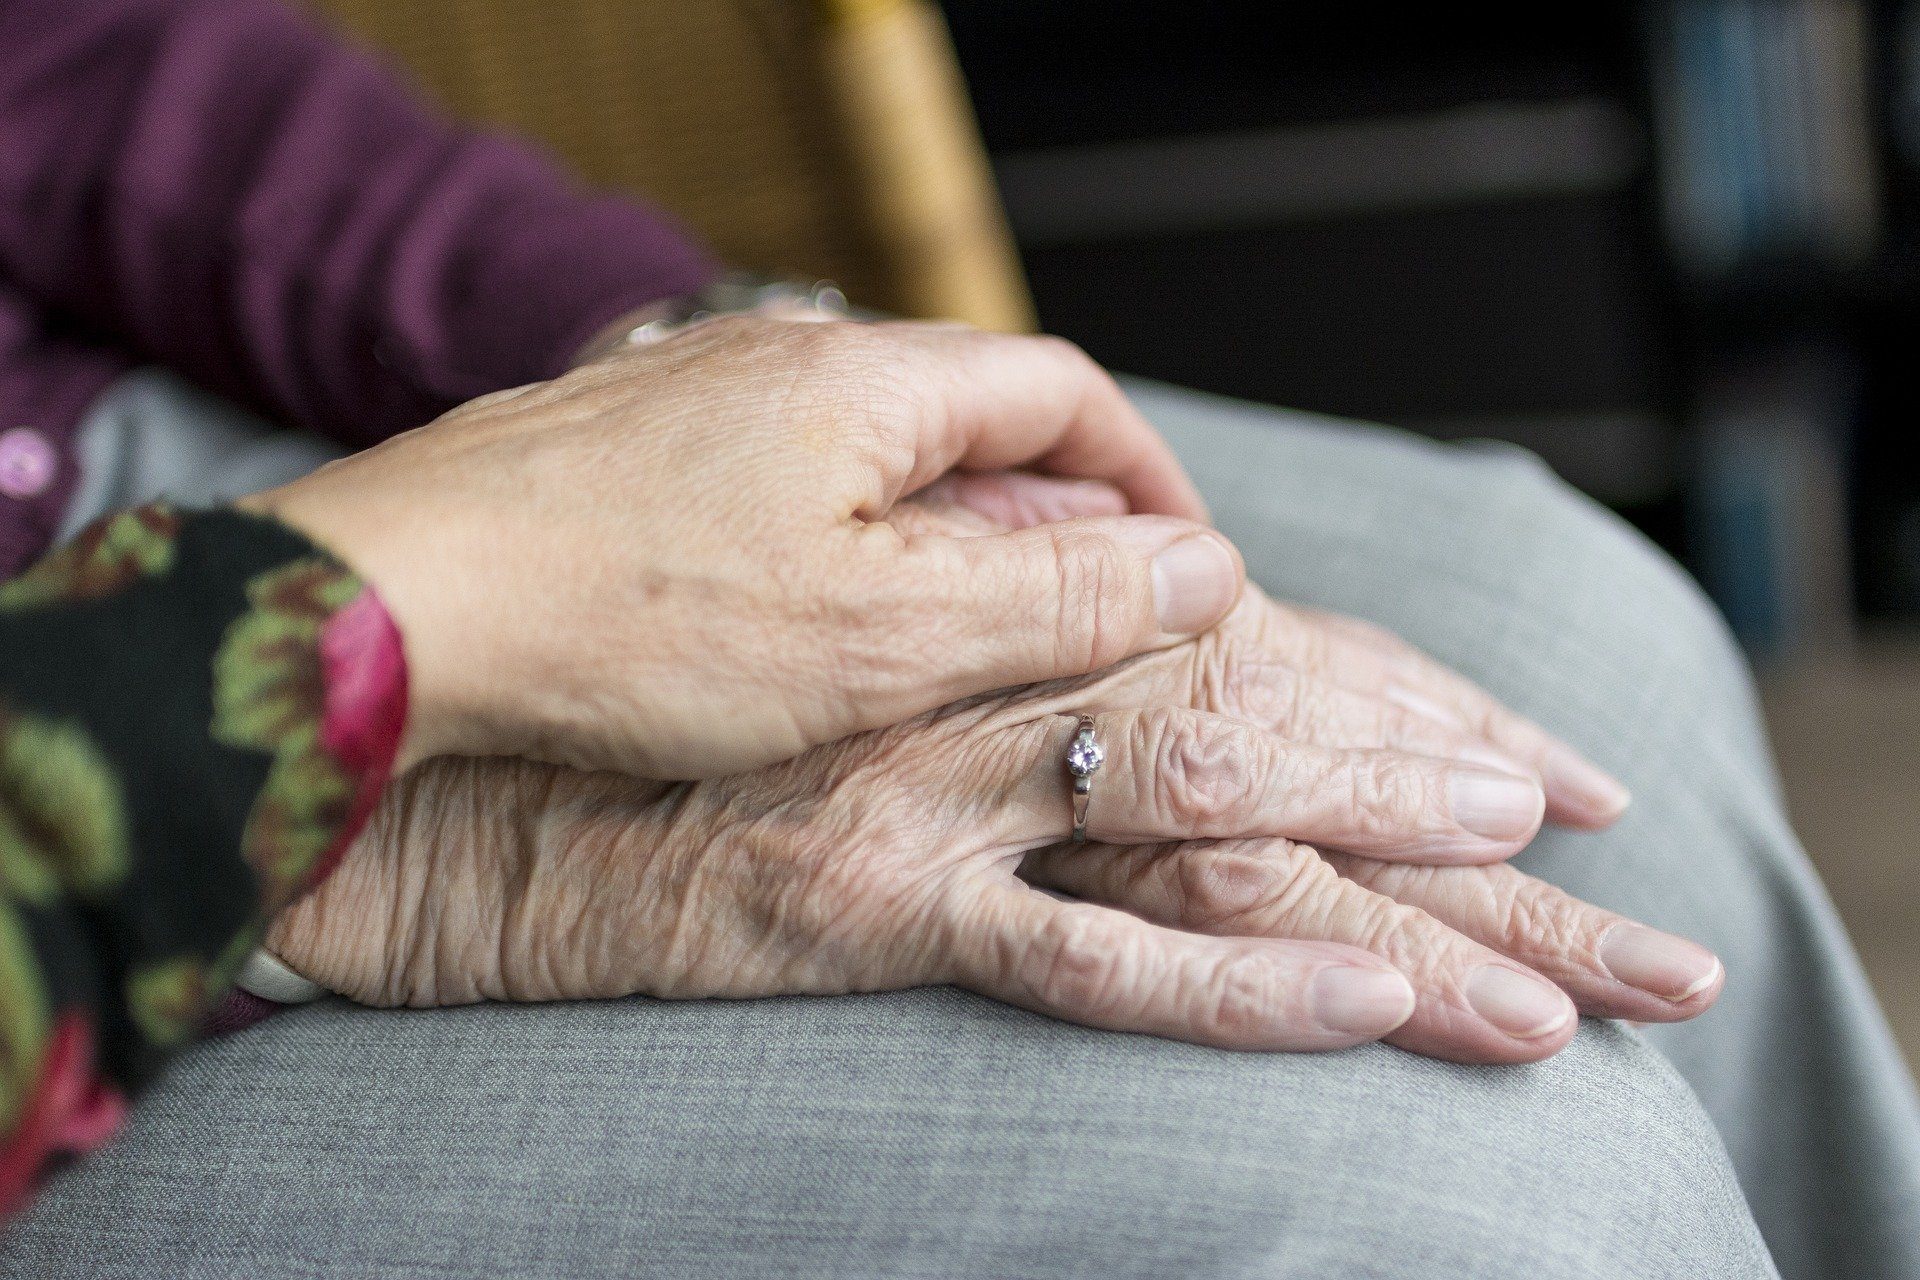 Pflege- und Senioreneinrichtungen: Zeit ist reif für Lockerungen